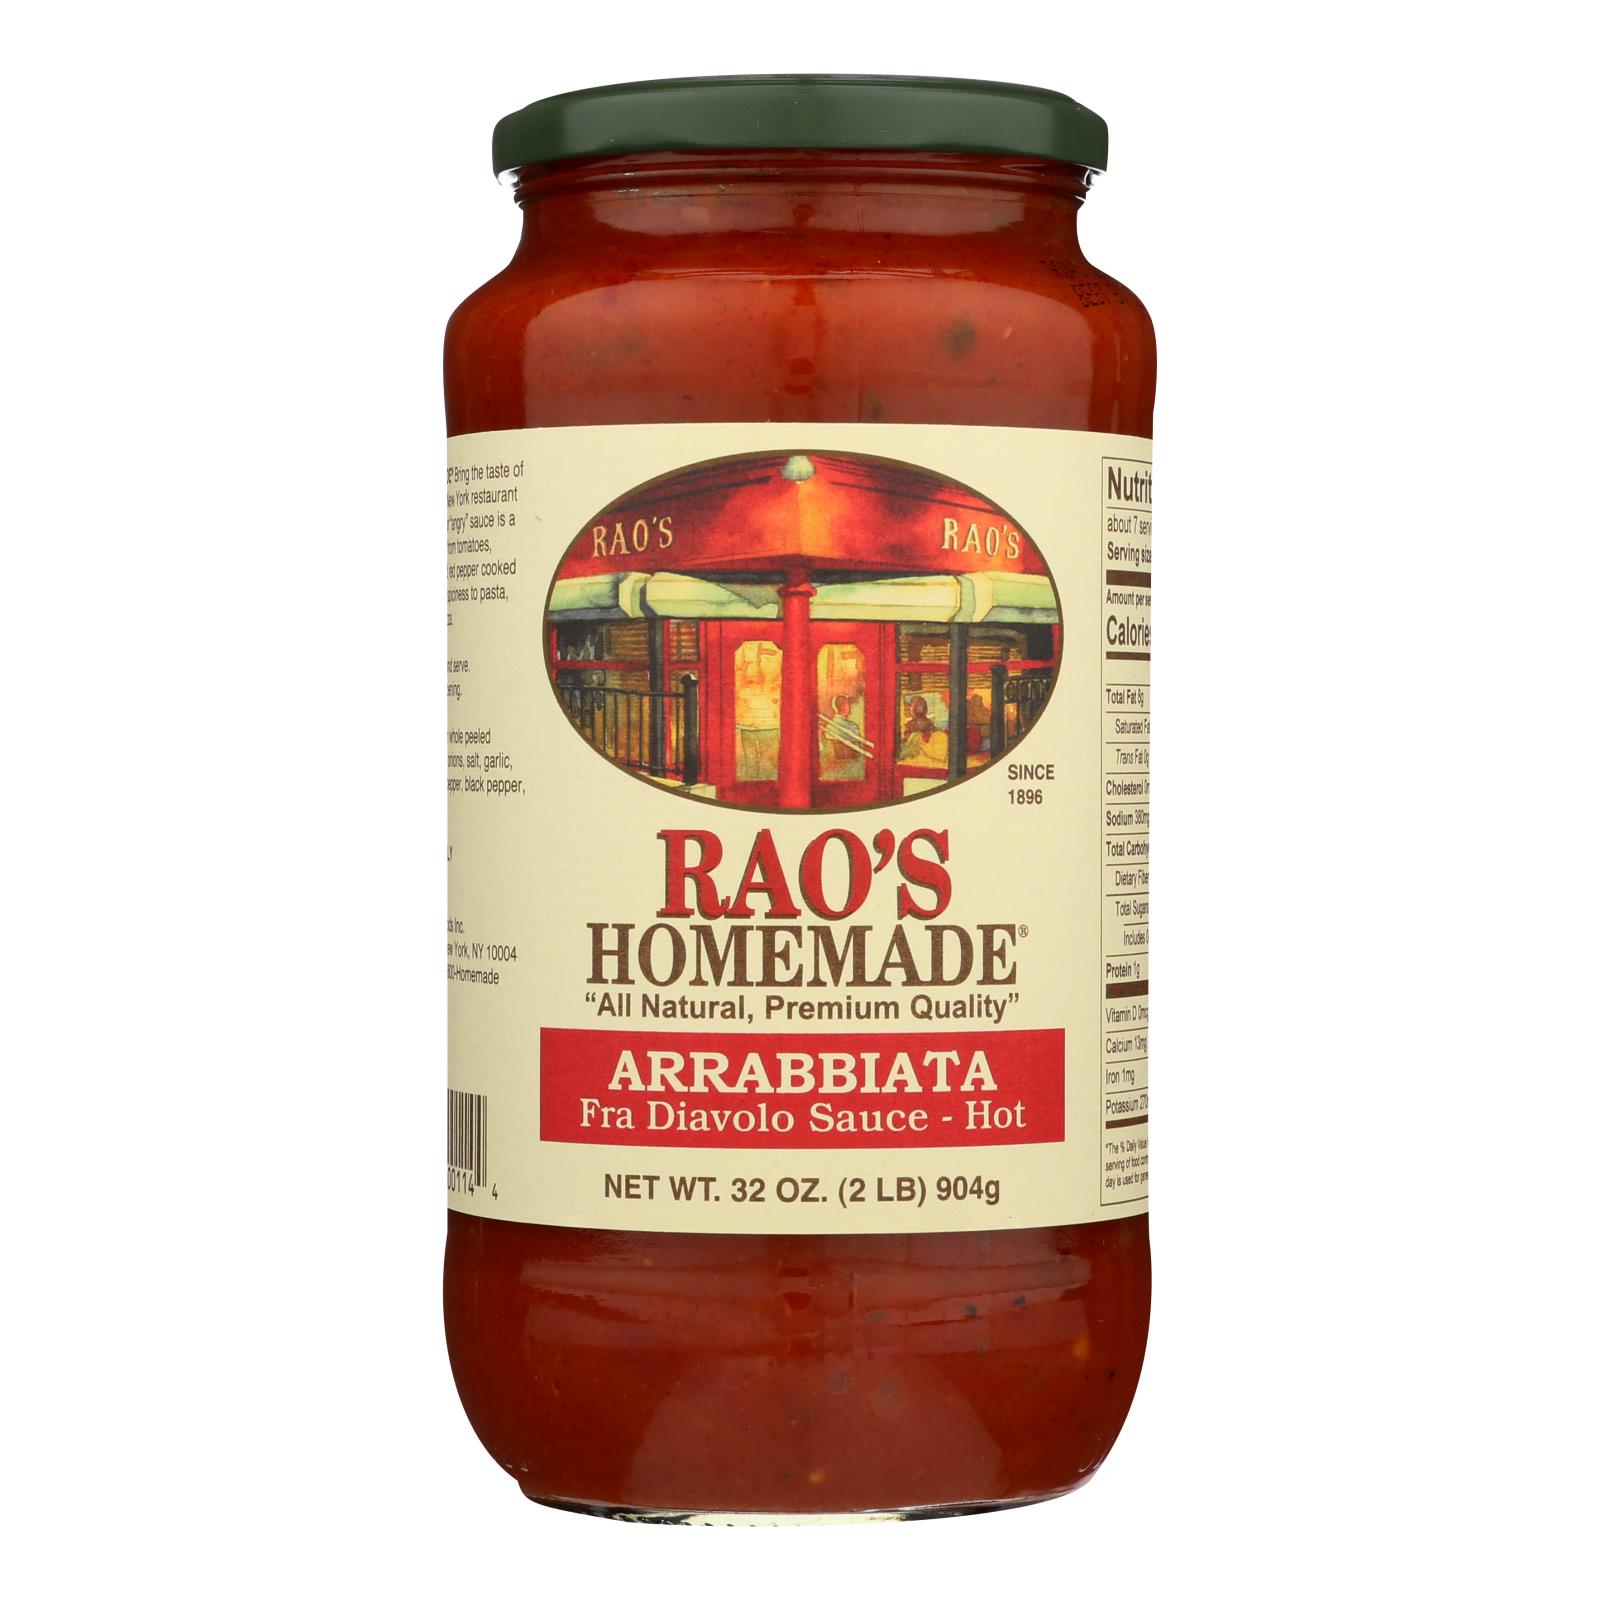 Rao's Homemade® Arrabbiata Fra Diavolo Sauce - Hot - Case of 6 - 32 OZ